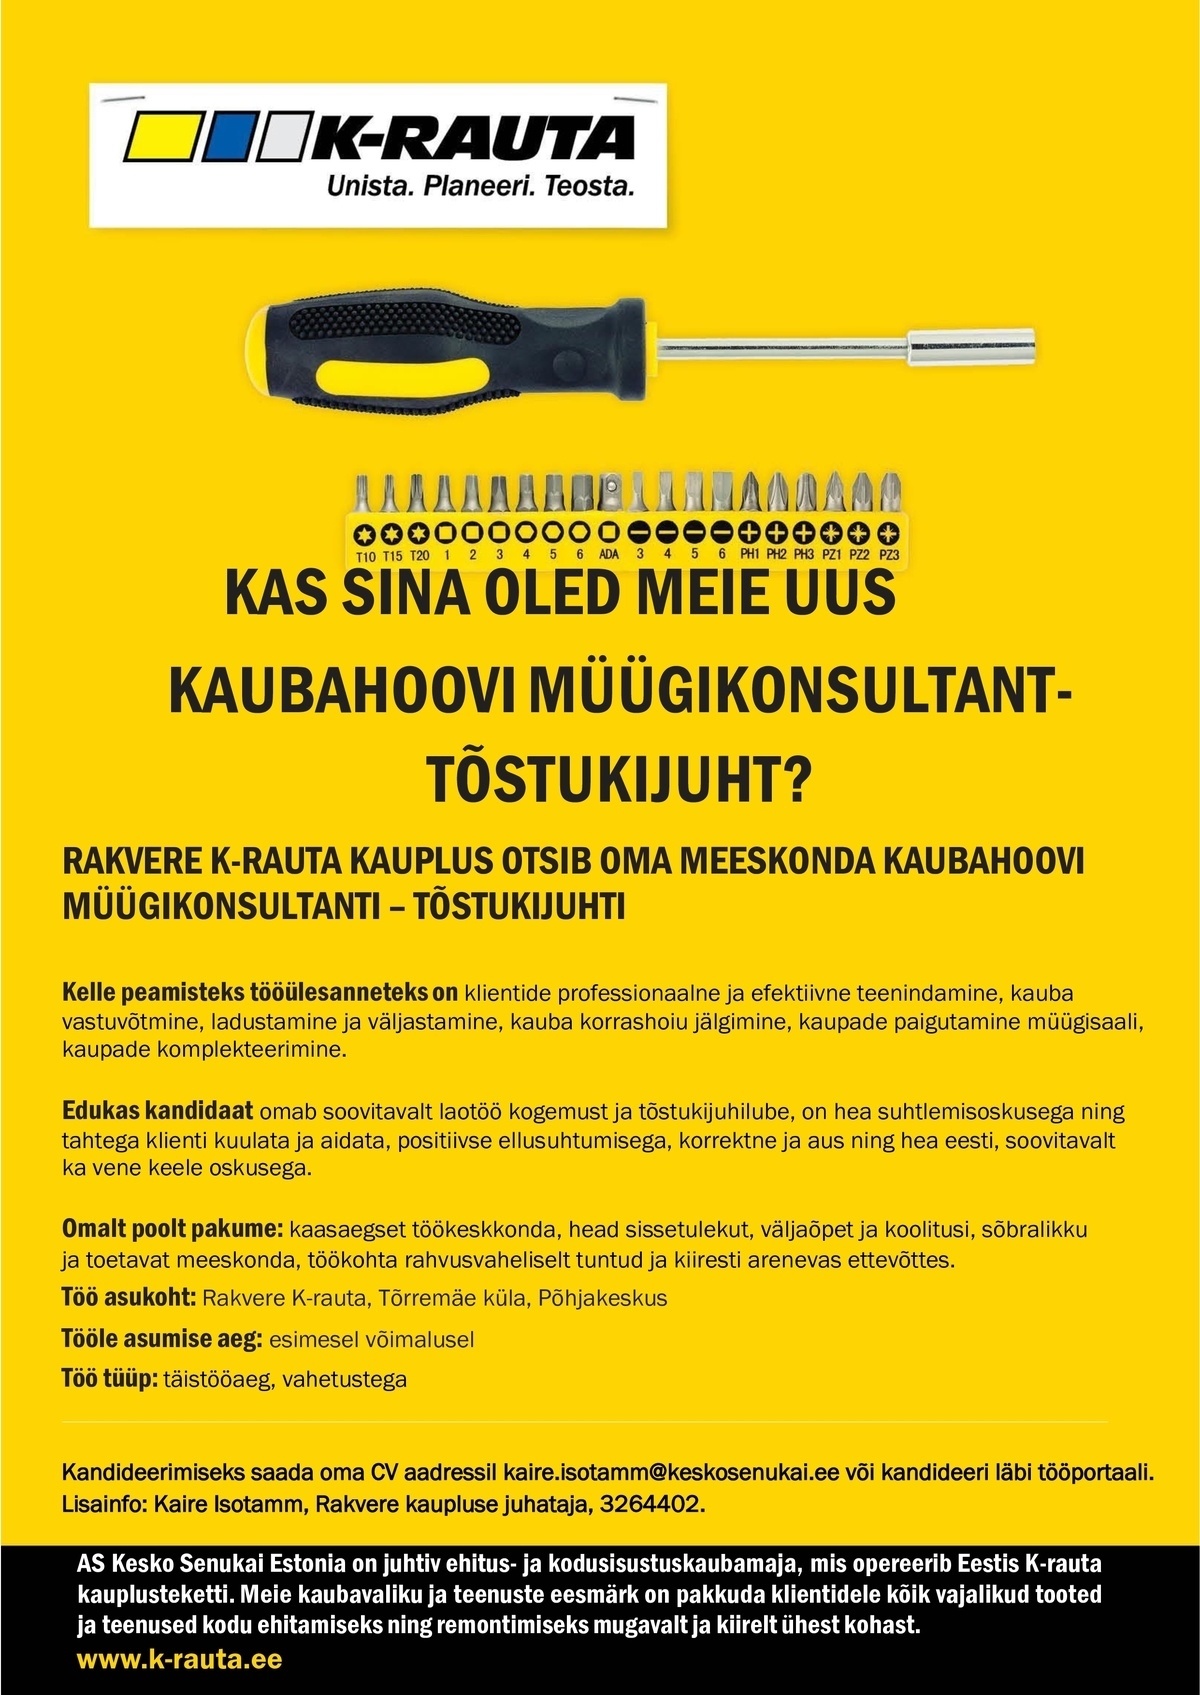 AS Kesko Senukai Estonia Kaubahoovi müügikonsultant-tõstukijuht Rakvere K-rautasse